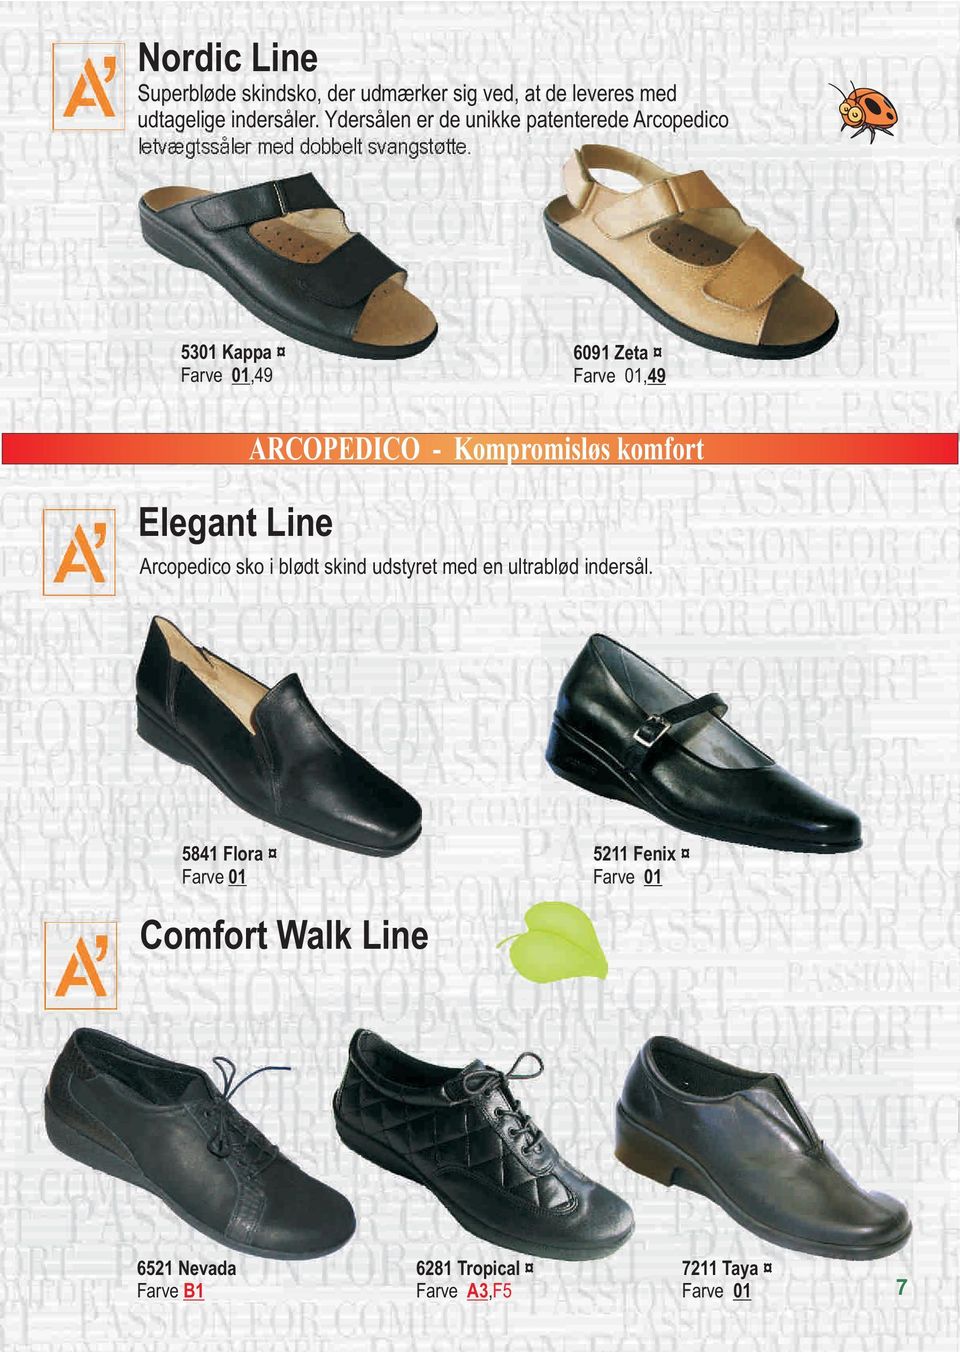 5301 Kappa,49 6091 Zeta,49 Elegant Line ARCOPEDICO - Kompromisløs komfort Arcopedico sko i blødt skind